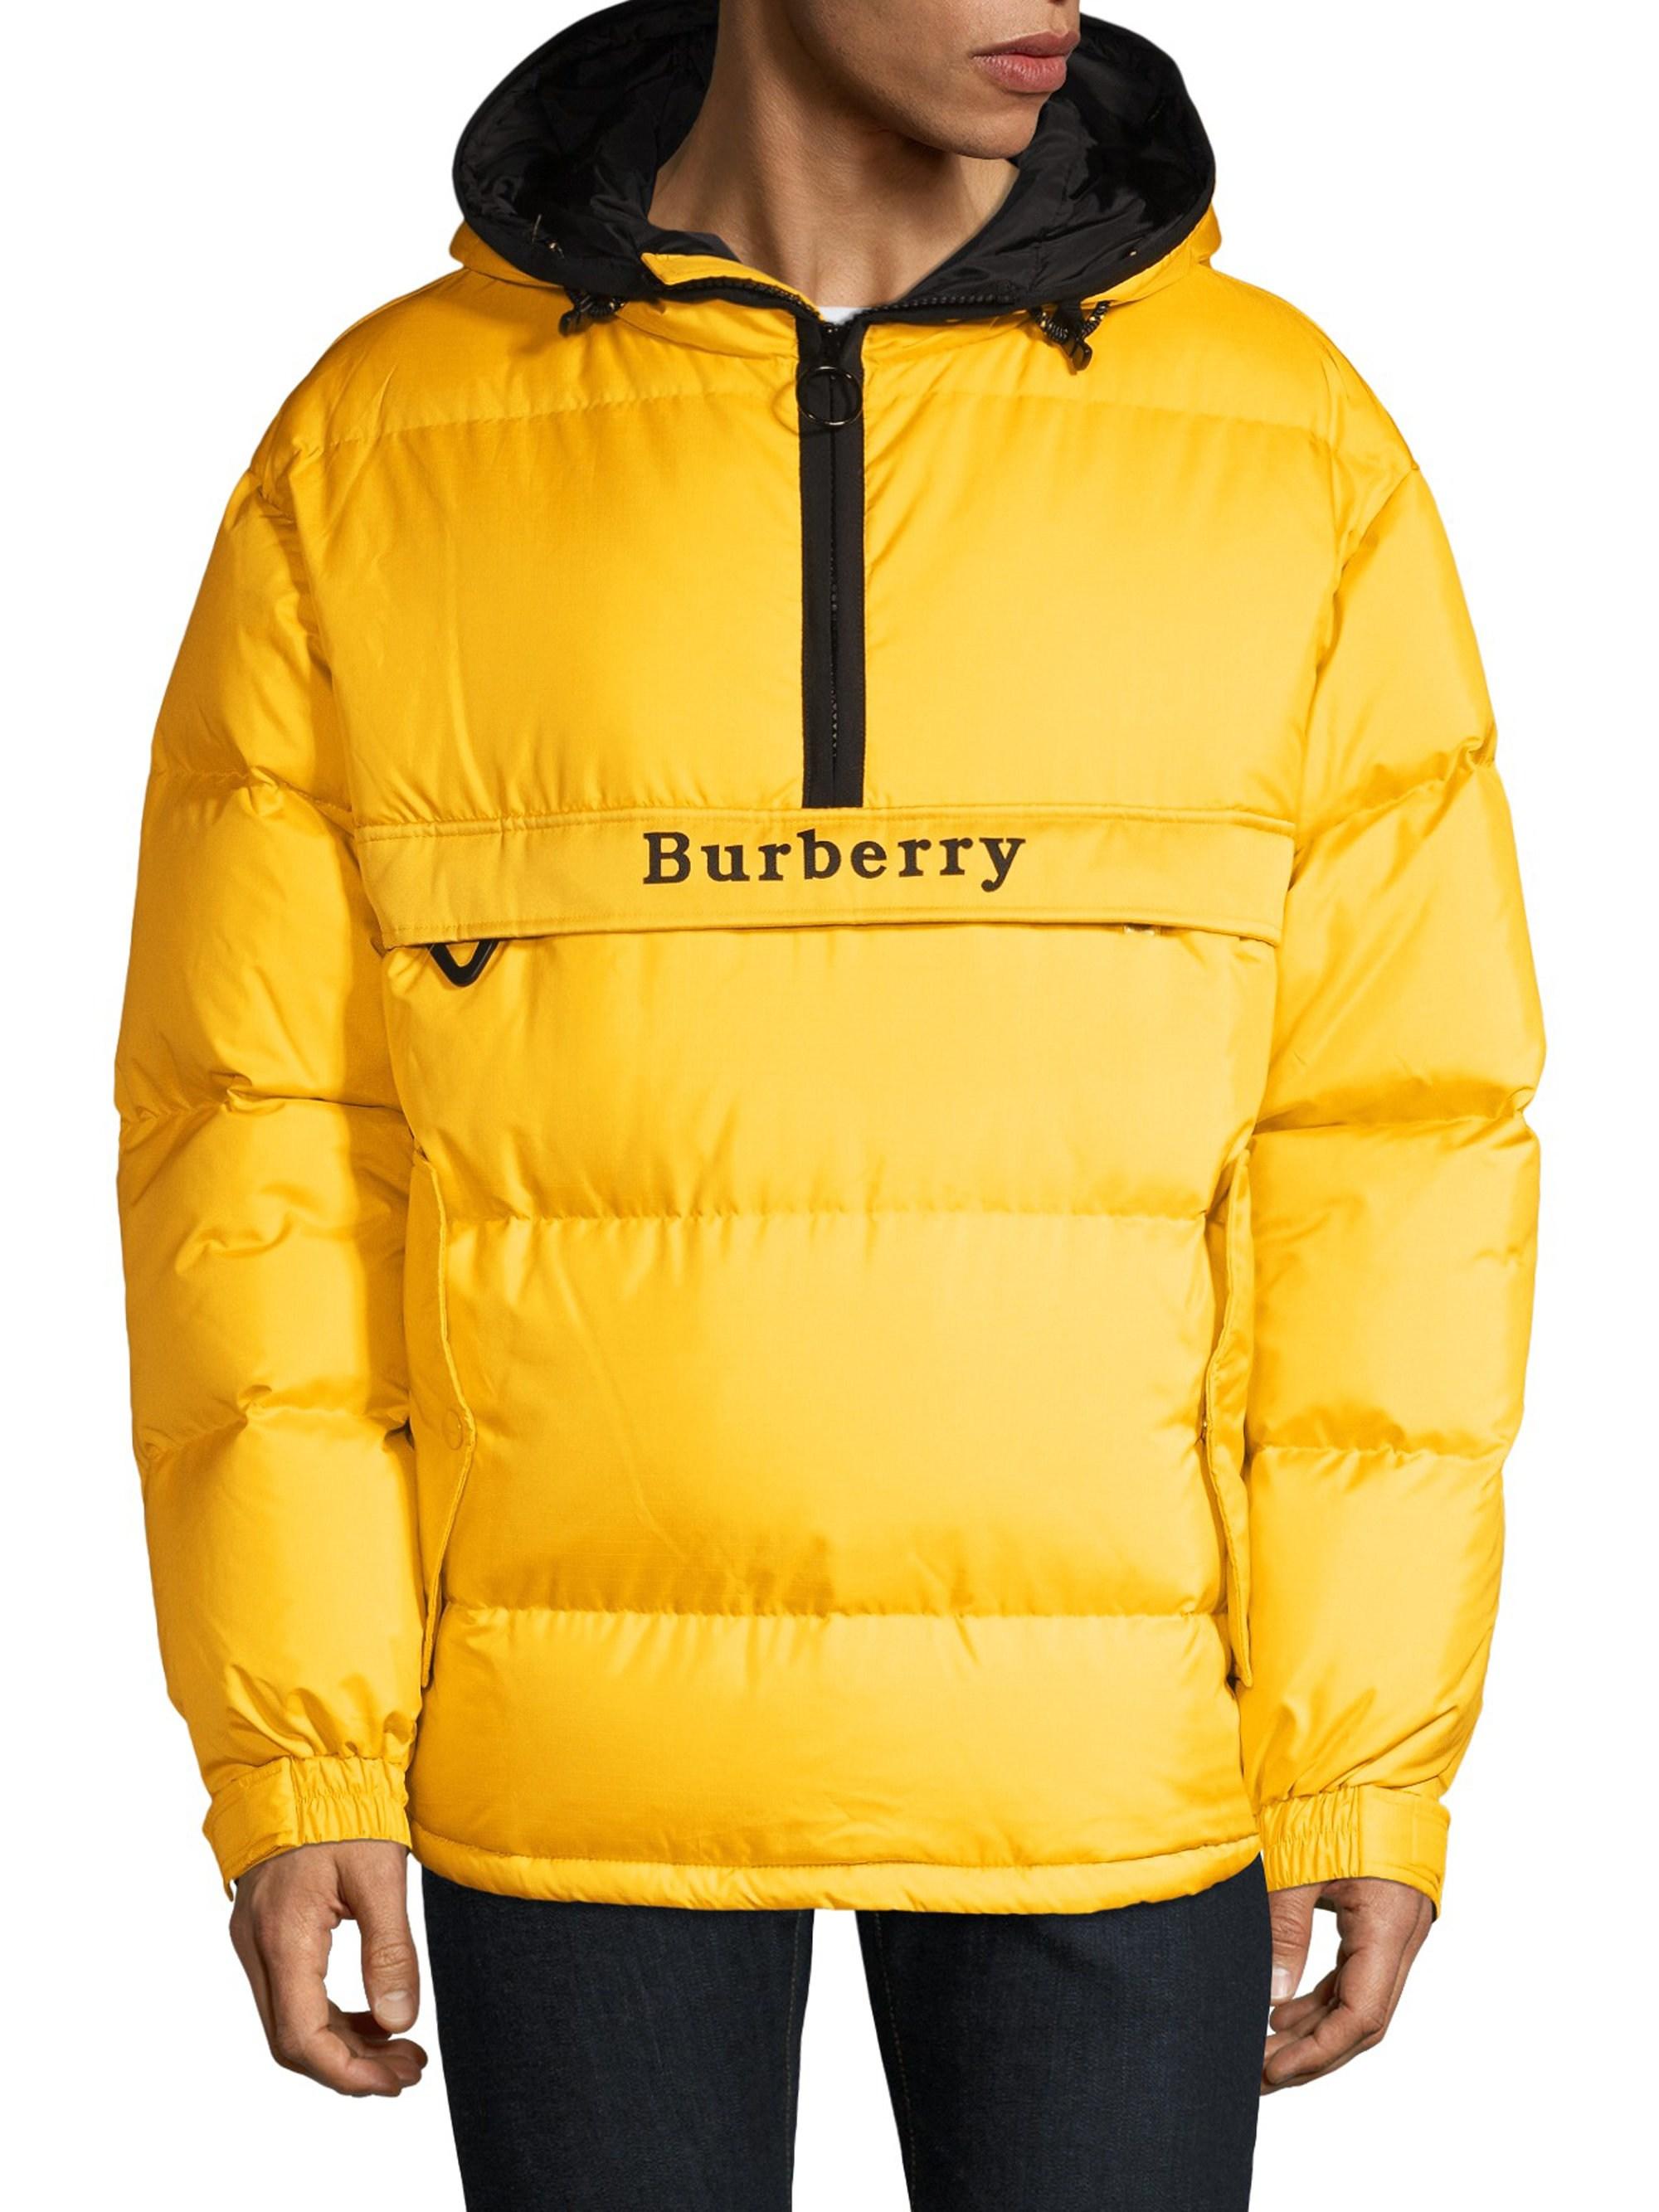 yellow burberry jacket